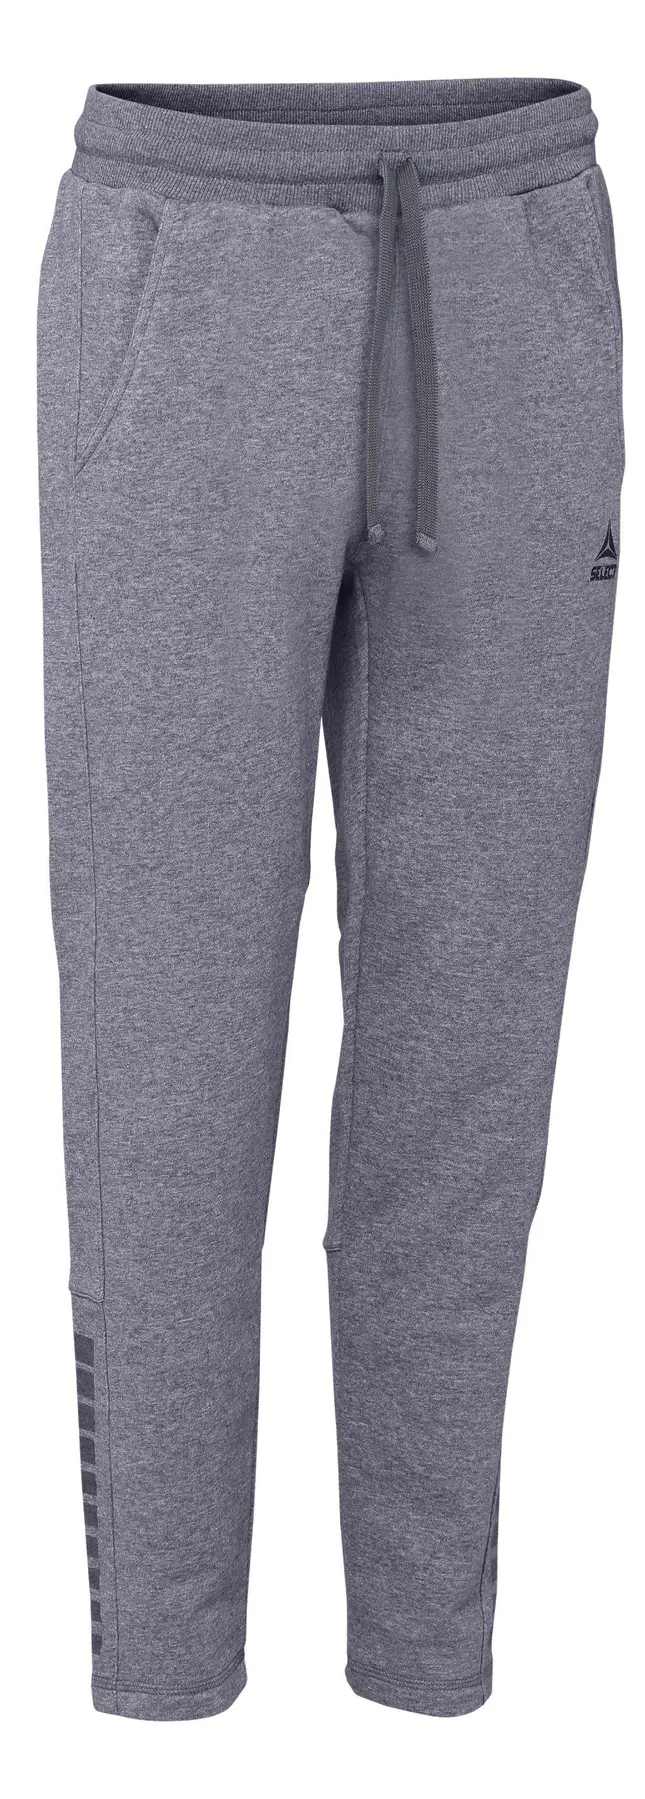 Штаны SELECT Torino sweat pants women (030) сірий, XS